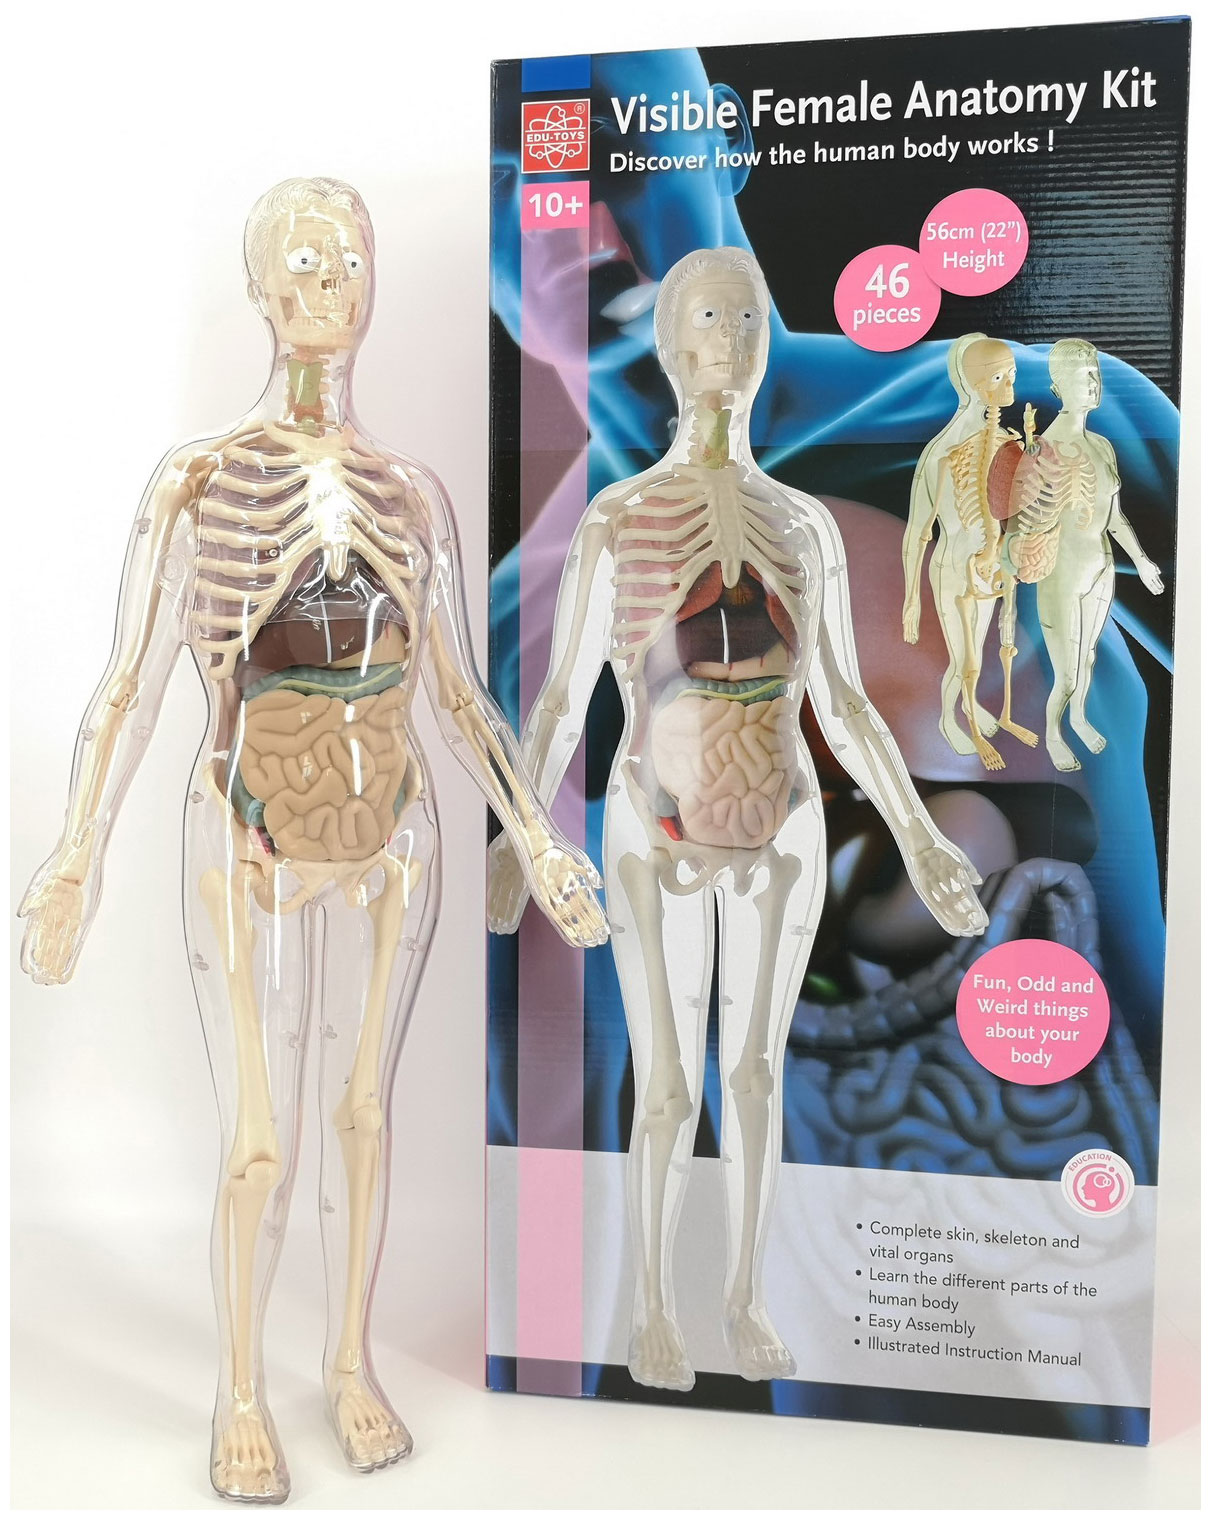 Анатомический набор Edu toys MK001 (органы, скелет 56см, жен.) анатомический набор edu toys mk001 органы скелет 56см жен